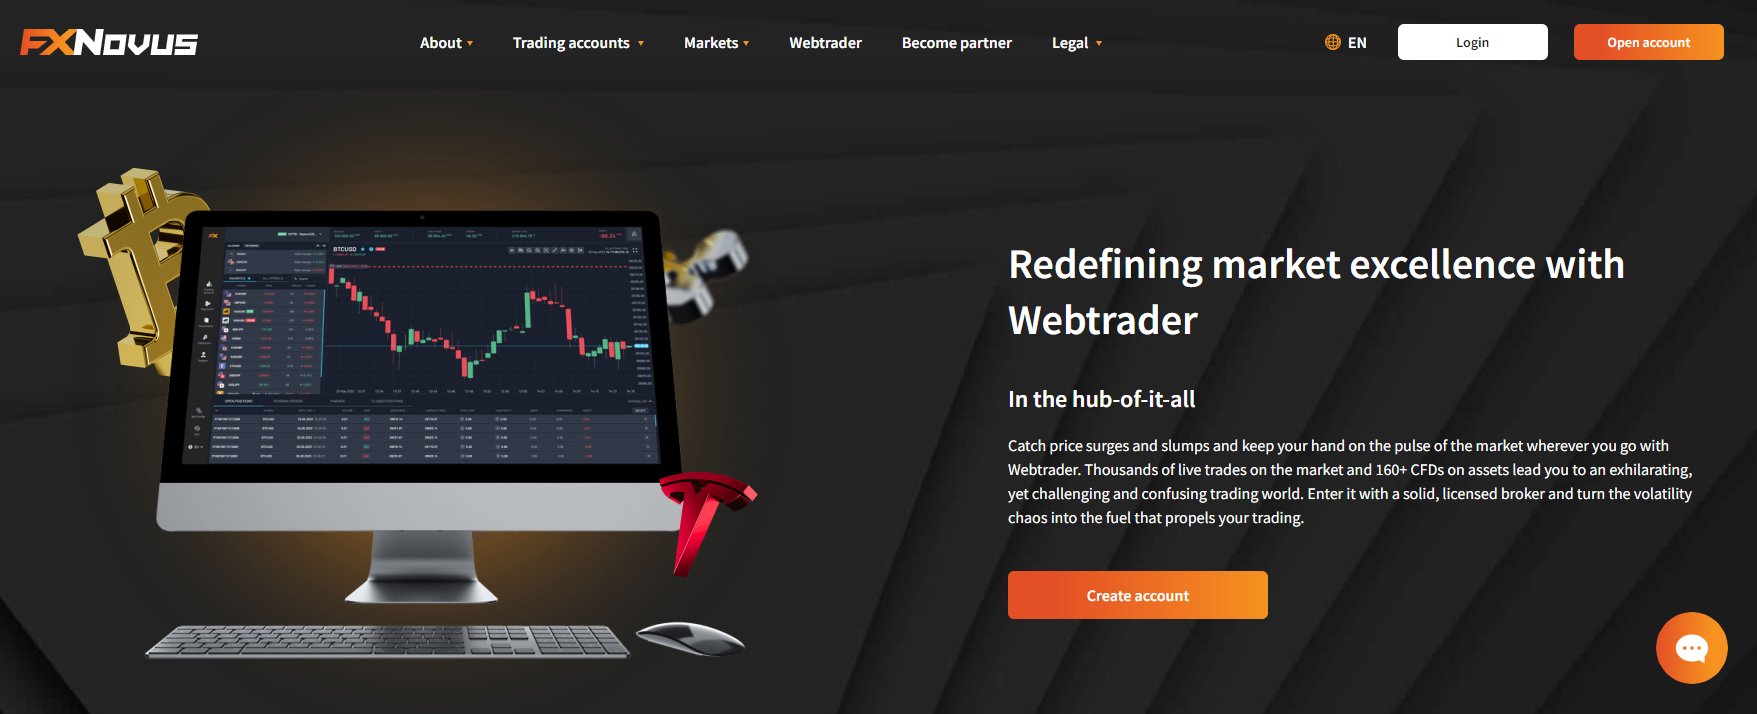 FXNovus WebTrader page displaying charts, indicators, and trading tools